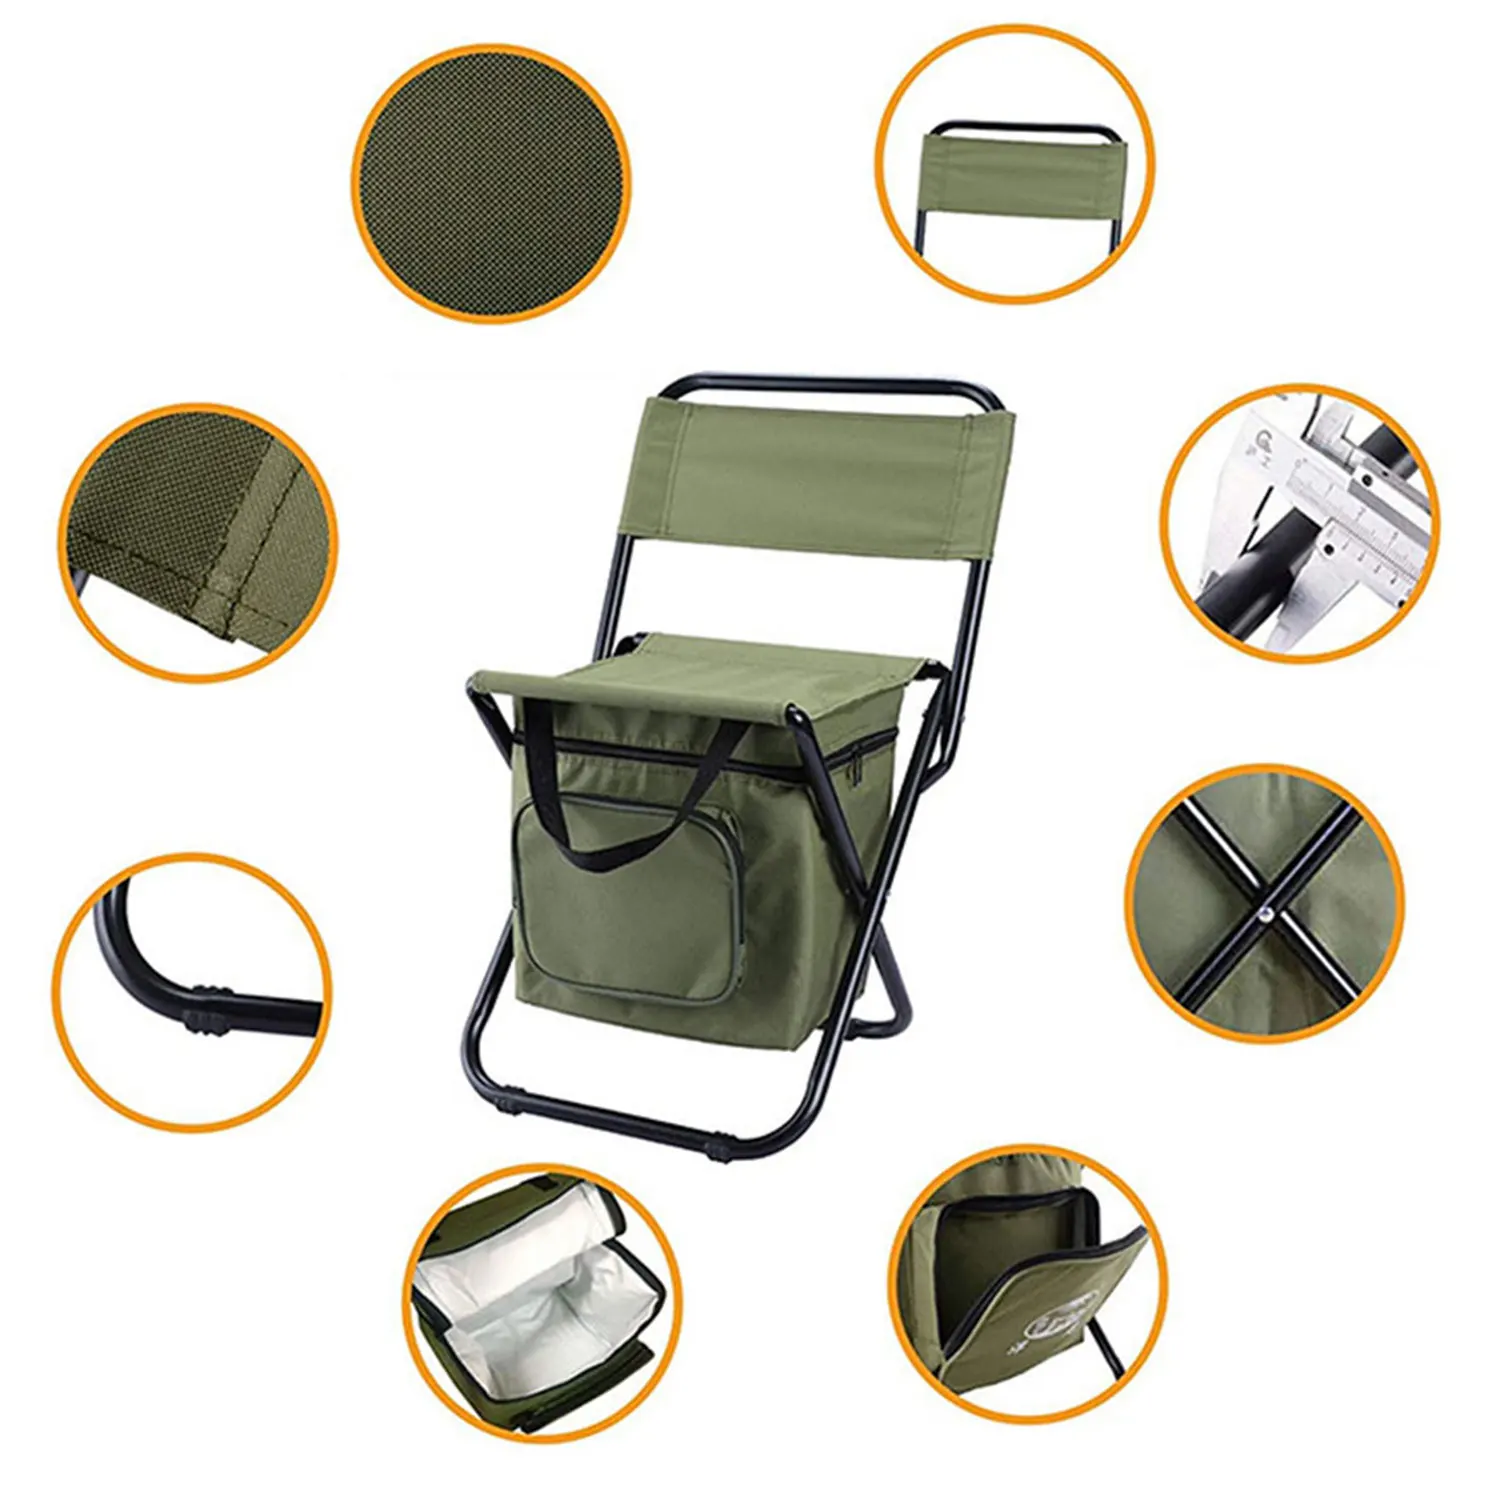 구매 휴대용 야외 접이식 의자 옥스포드 천 냉장 보관 가방 의자 통합 캠핑 다기능 낚시 의자, 스포츠, 아웃도어, 활동, 액티비티, 안전한, 내구성